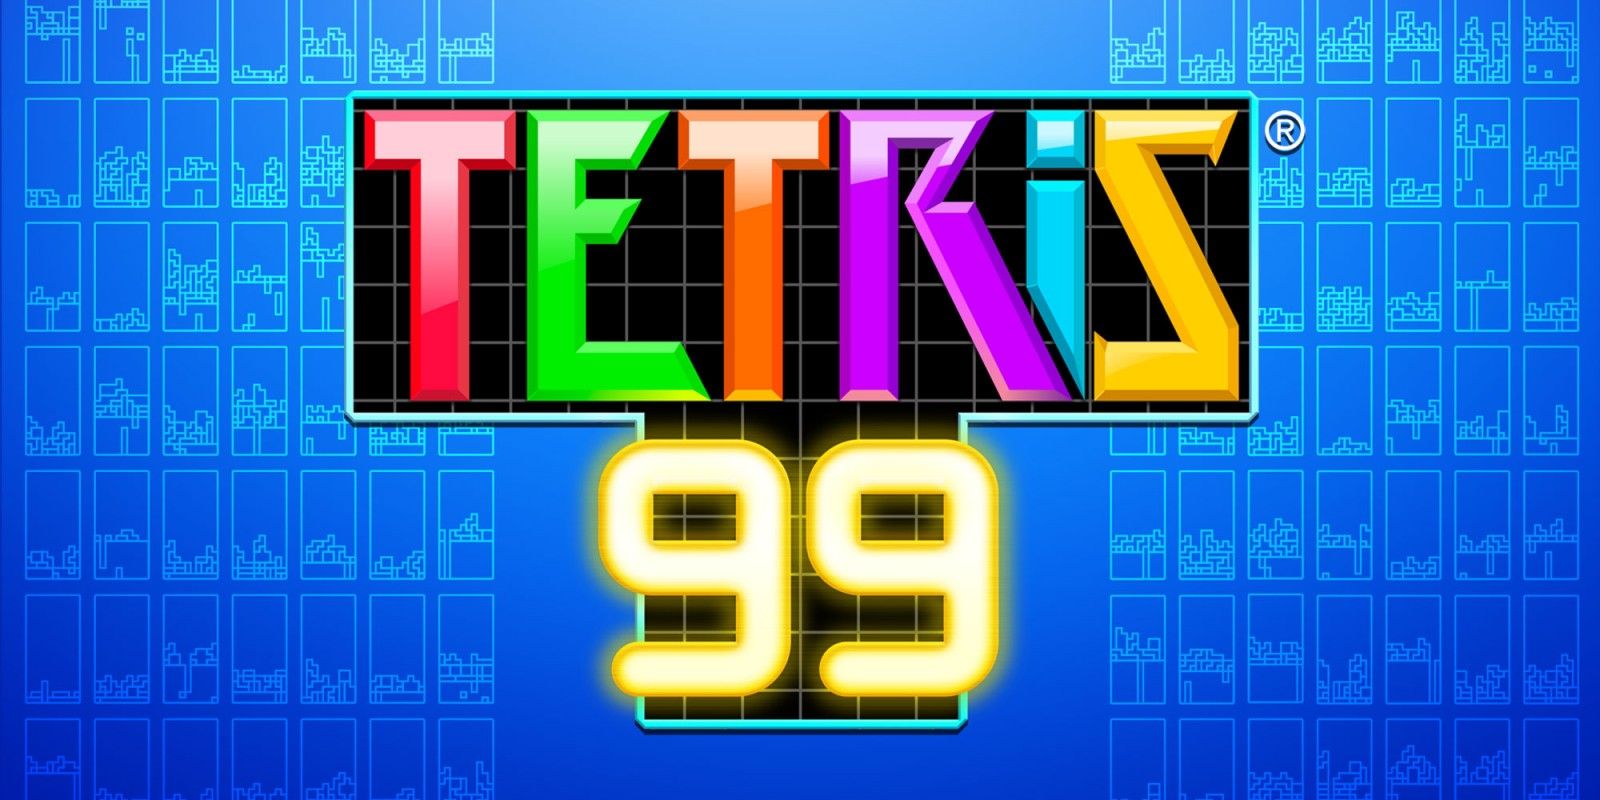 play tetris